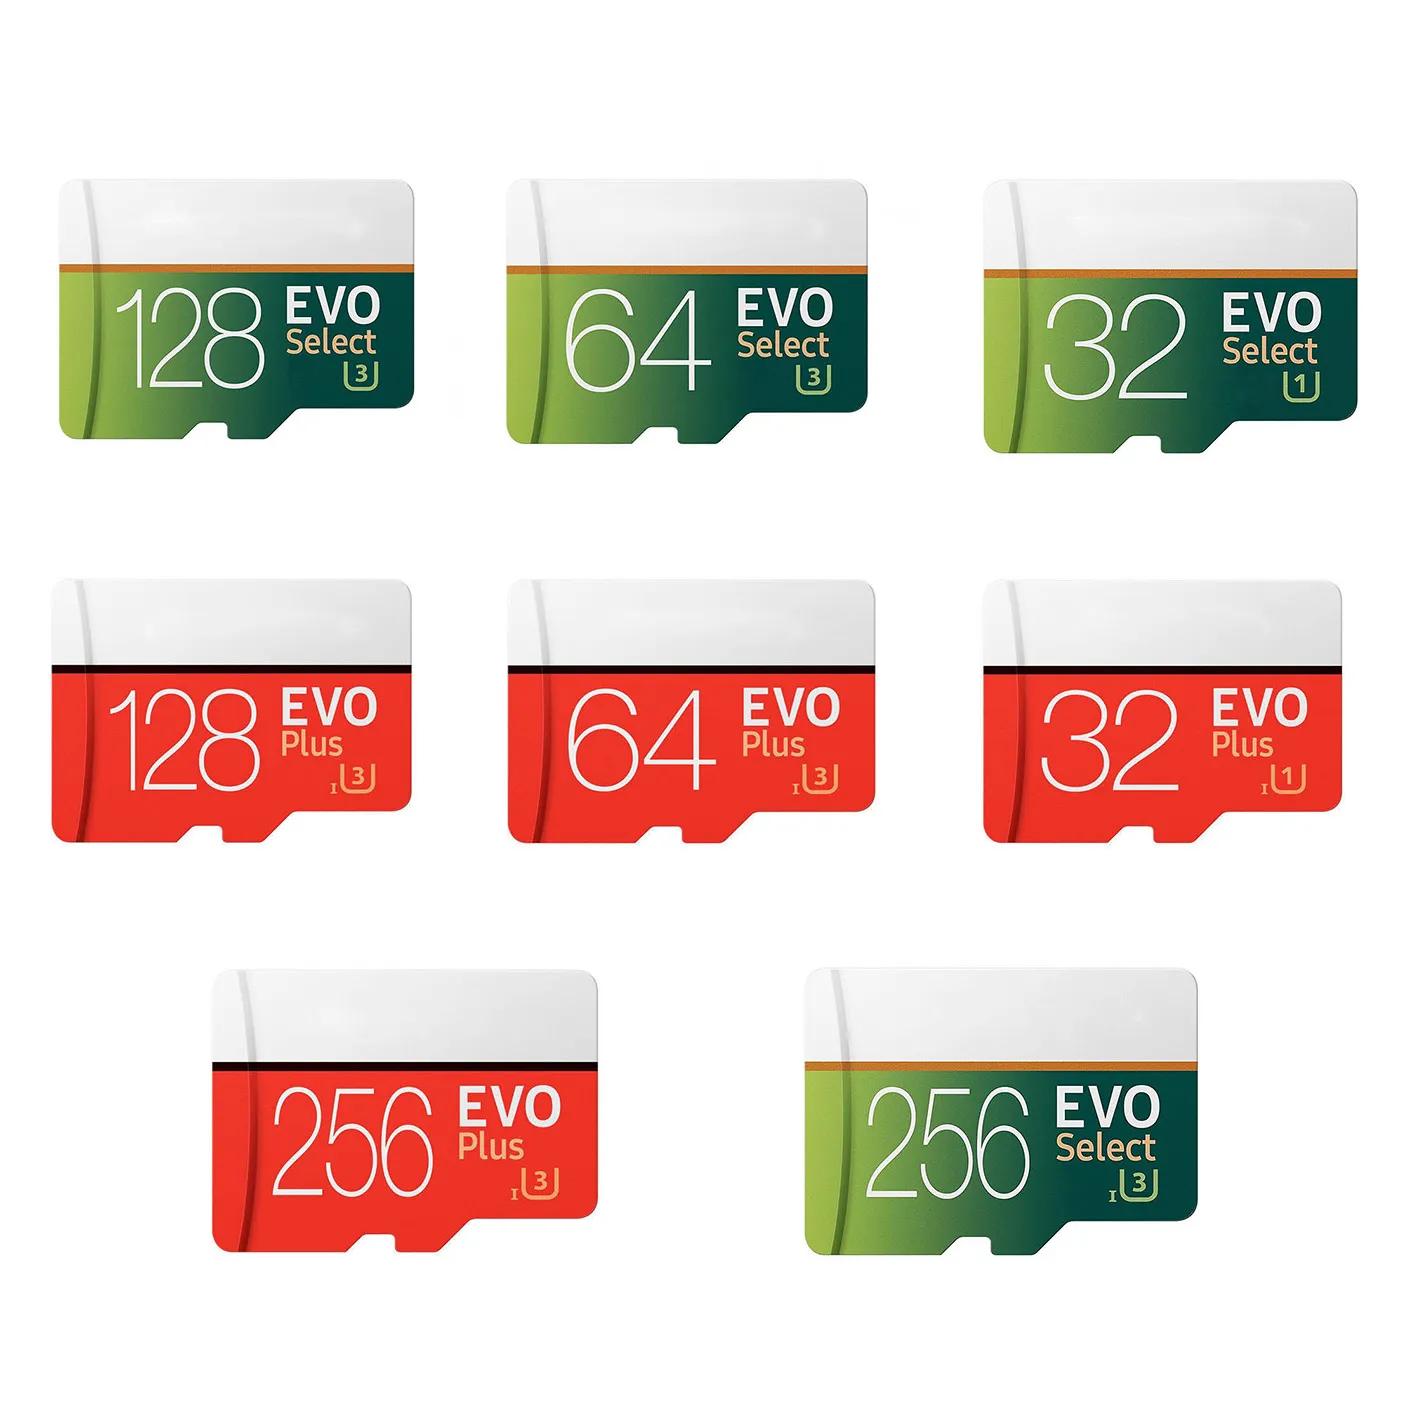 EVO Plus vs EVO Selecione 256GB 128GB 64GB 32GB Memória TF Trans Flash Cartão de alta velocidade para câmeras Smart Phones